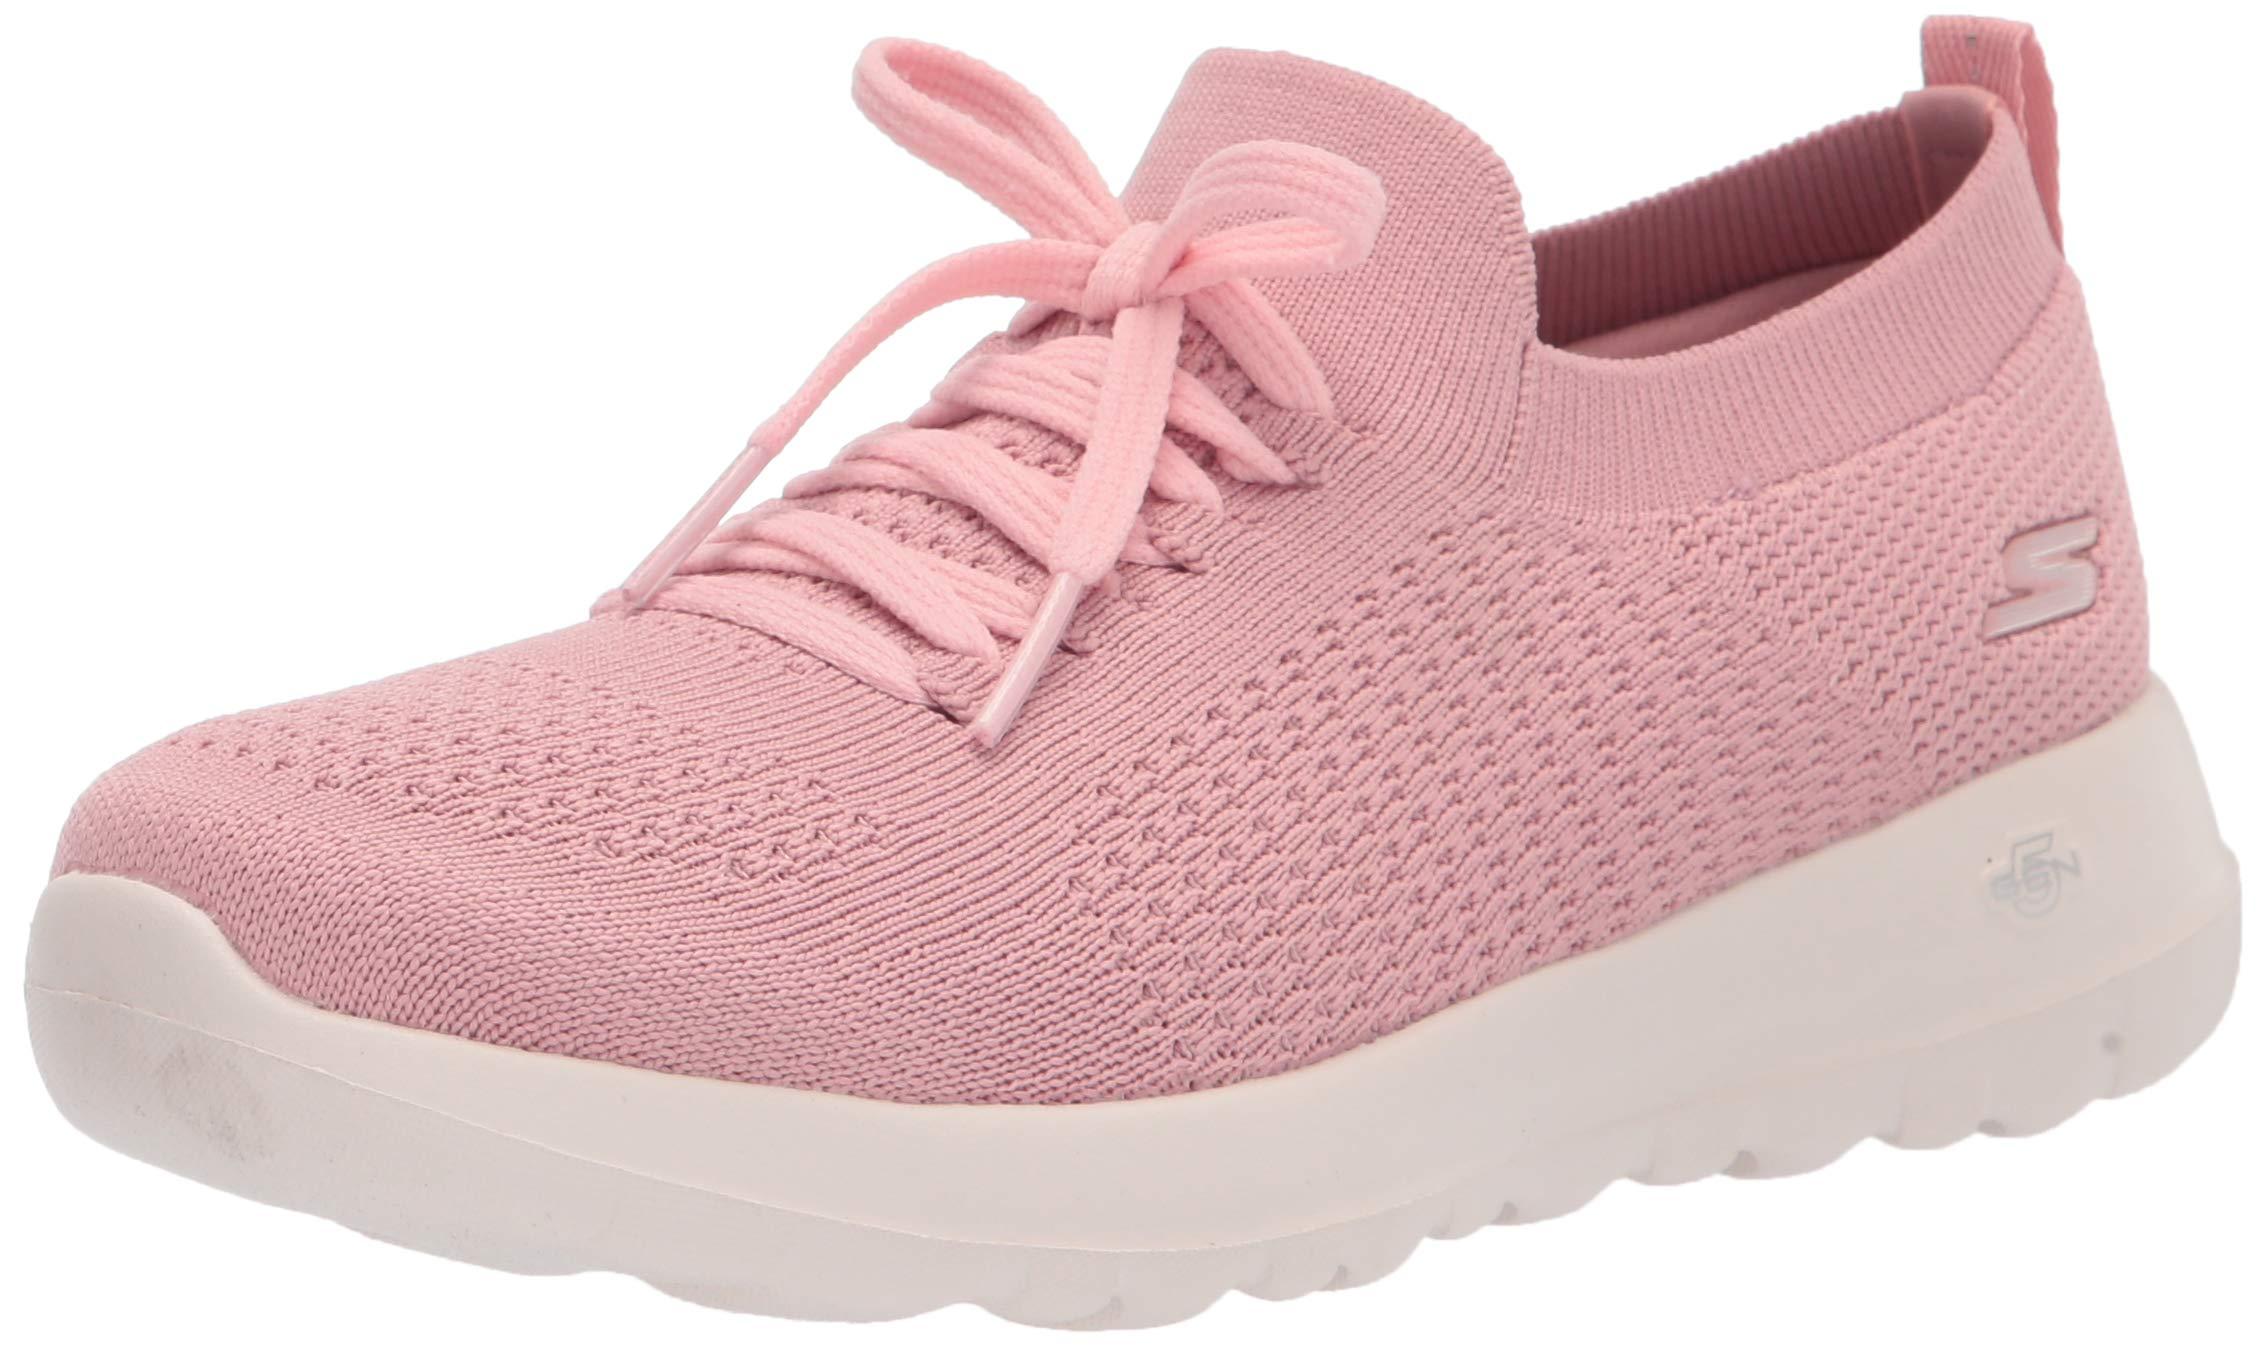 Skechers Womens Go Walk Joy Knit Slip On With Laces Sneaker in Pink | Lyst